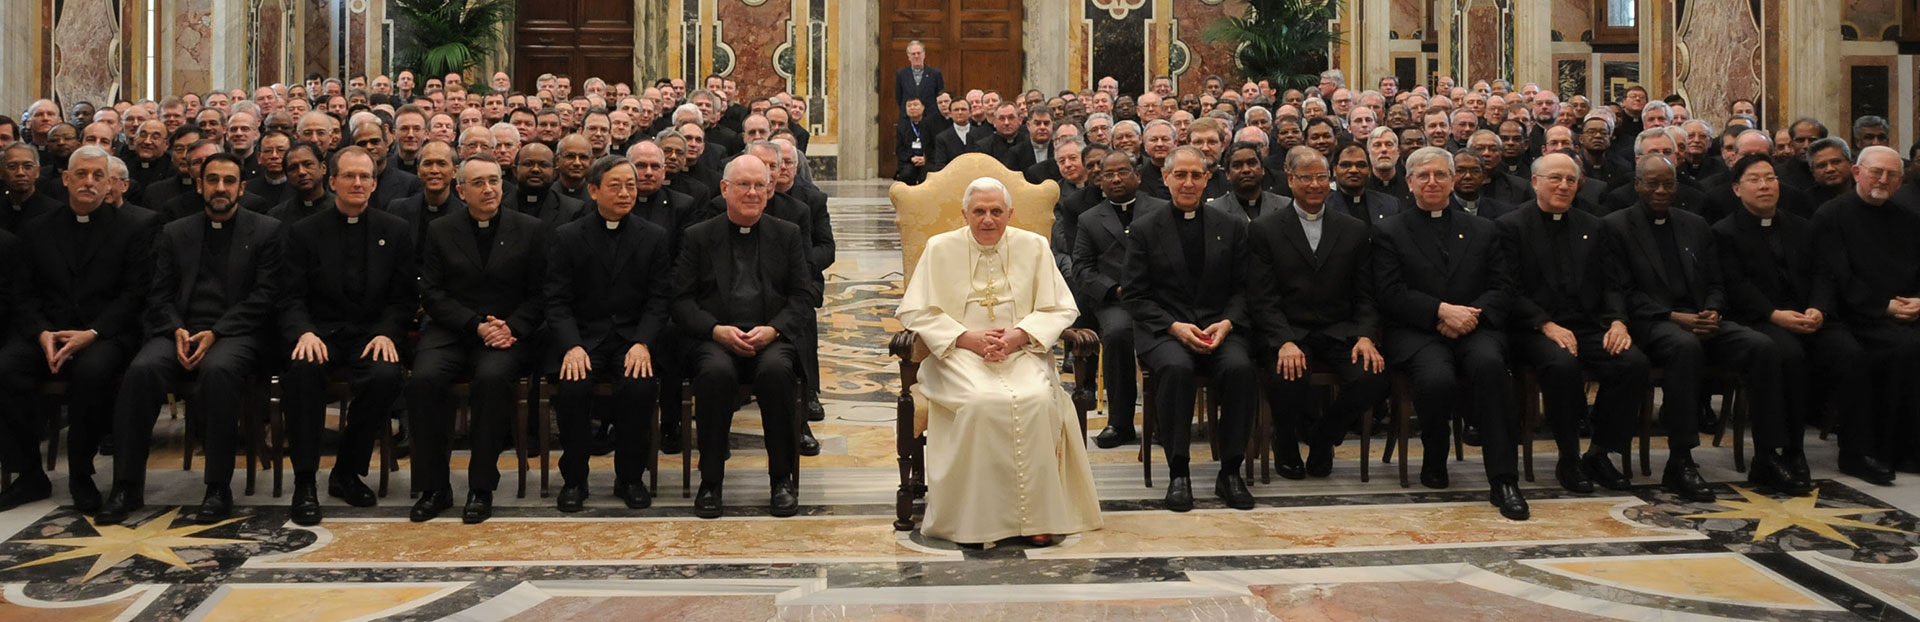 Papa emérito Benedicto XVI: “La Compañía de Jesús comparte el dolor de toda la Iglesia” dice el P. Sosa